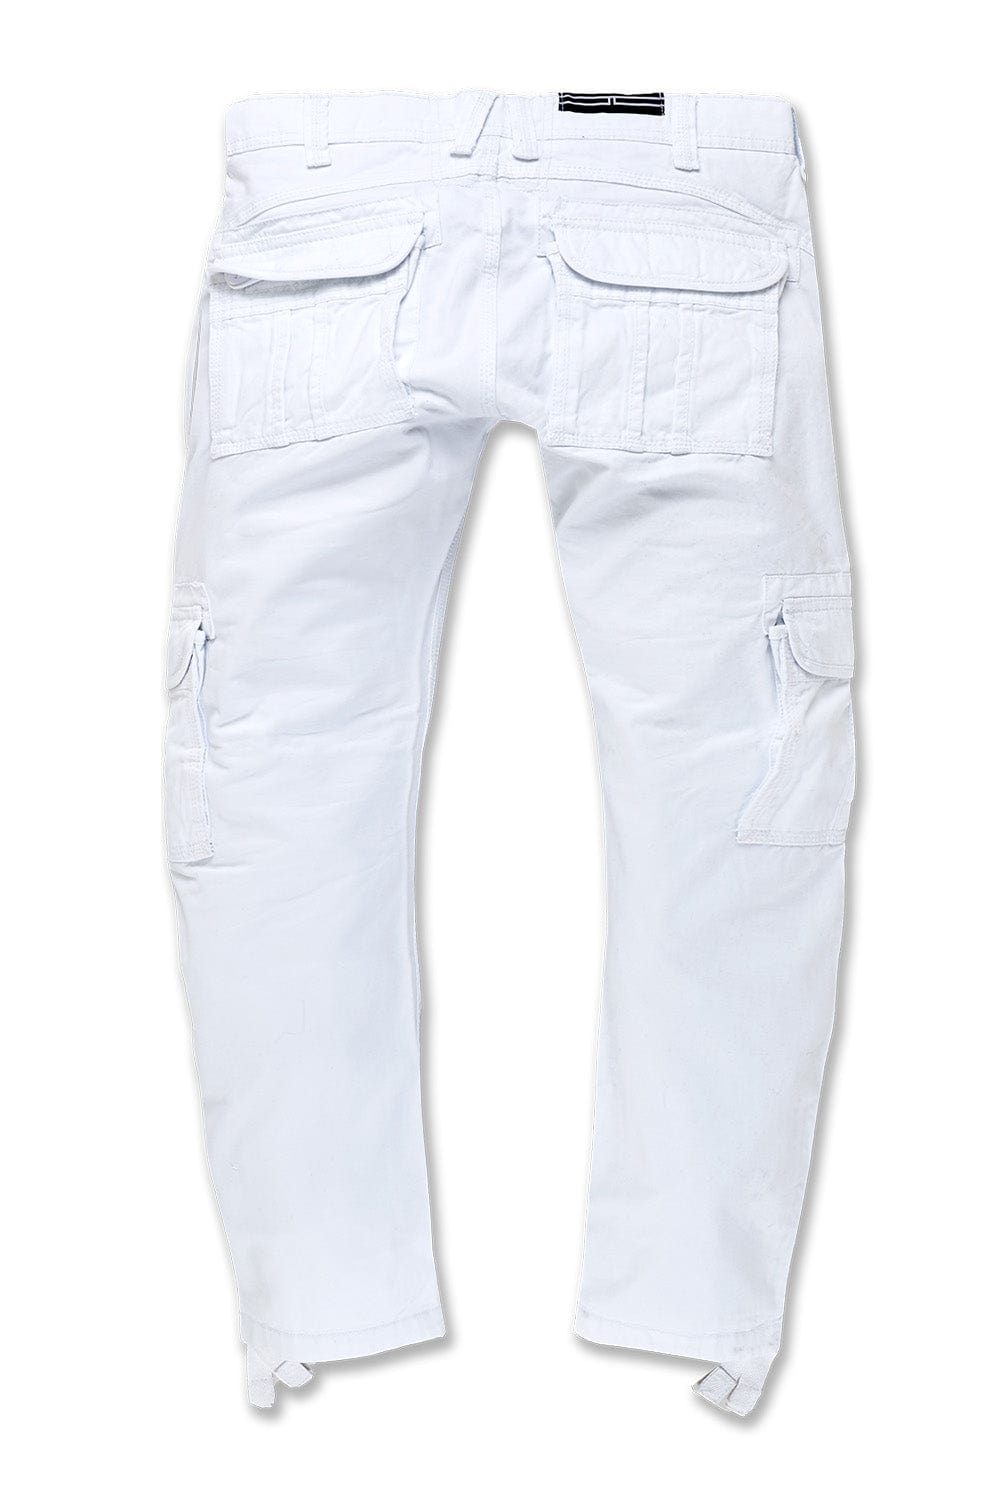 Jordan Craig Xavier - OG Cargo Pants (White)